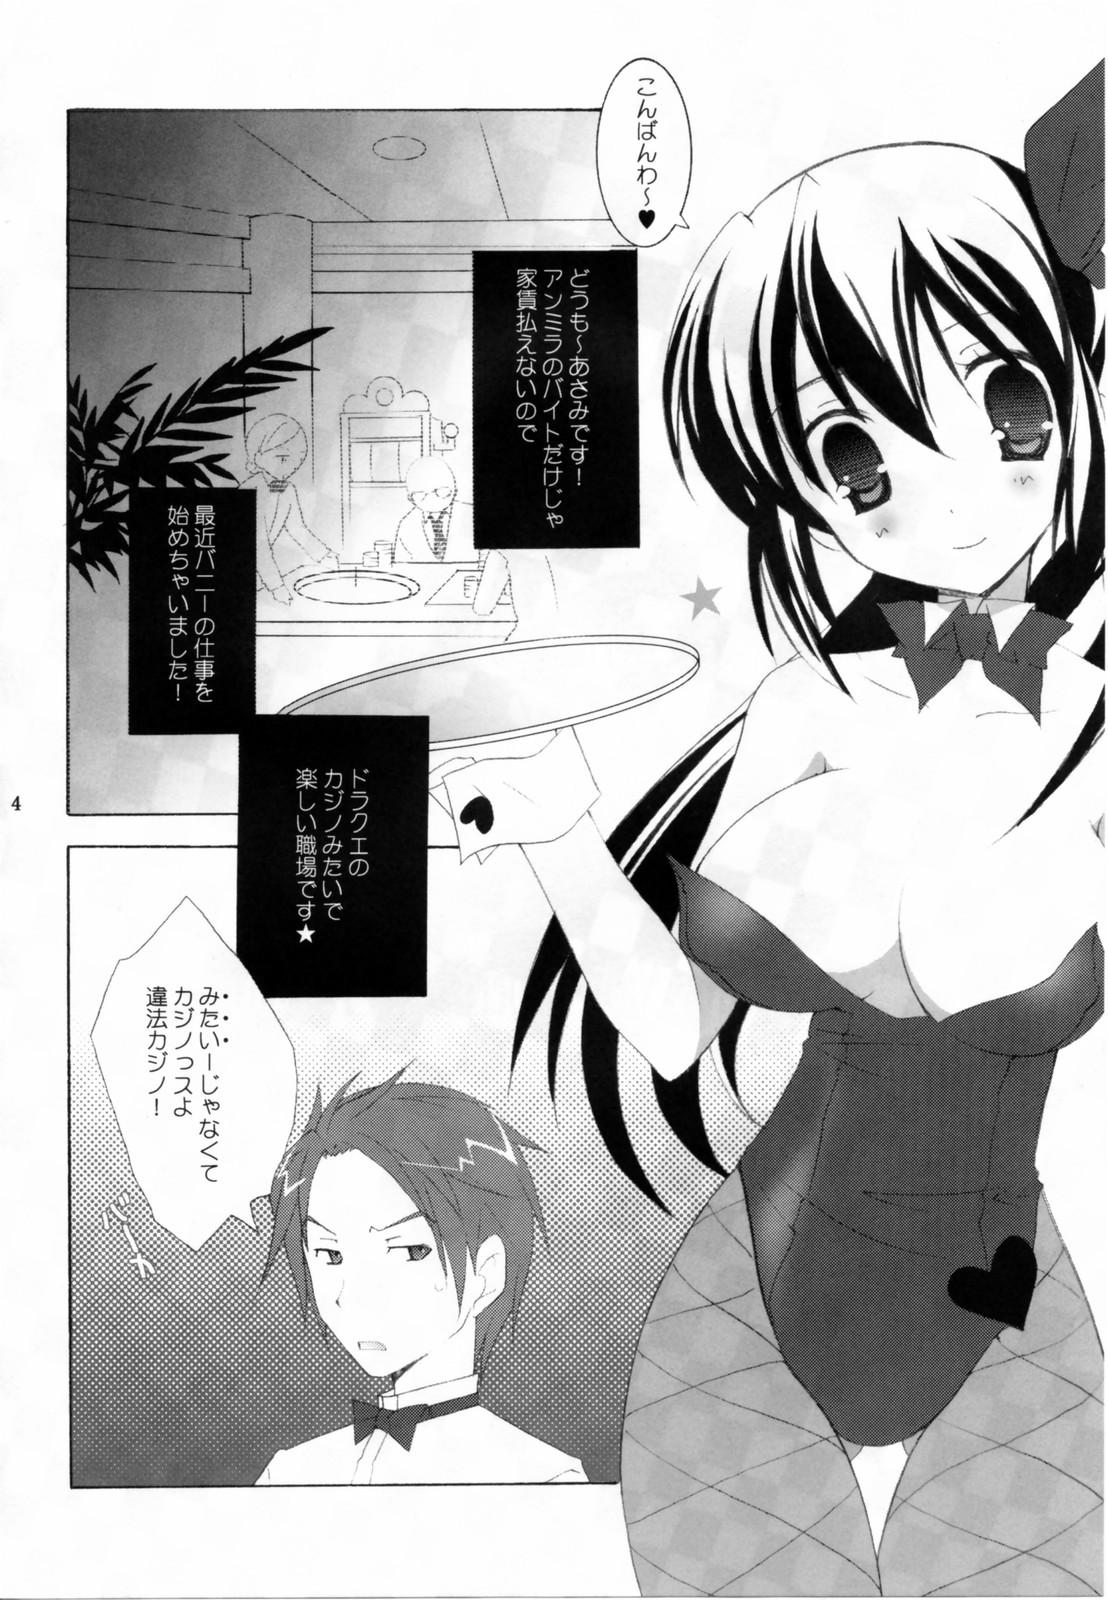 Hymen - Tenjikuya no Bunny Girl Safado - Page 3